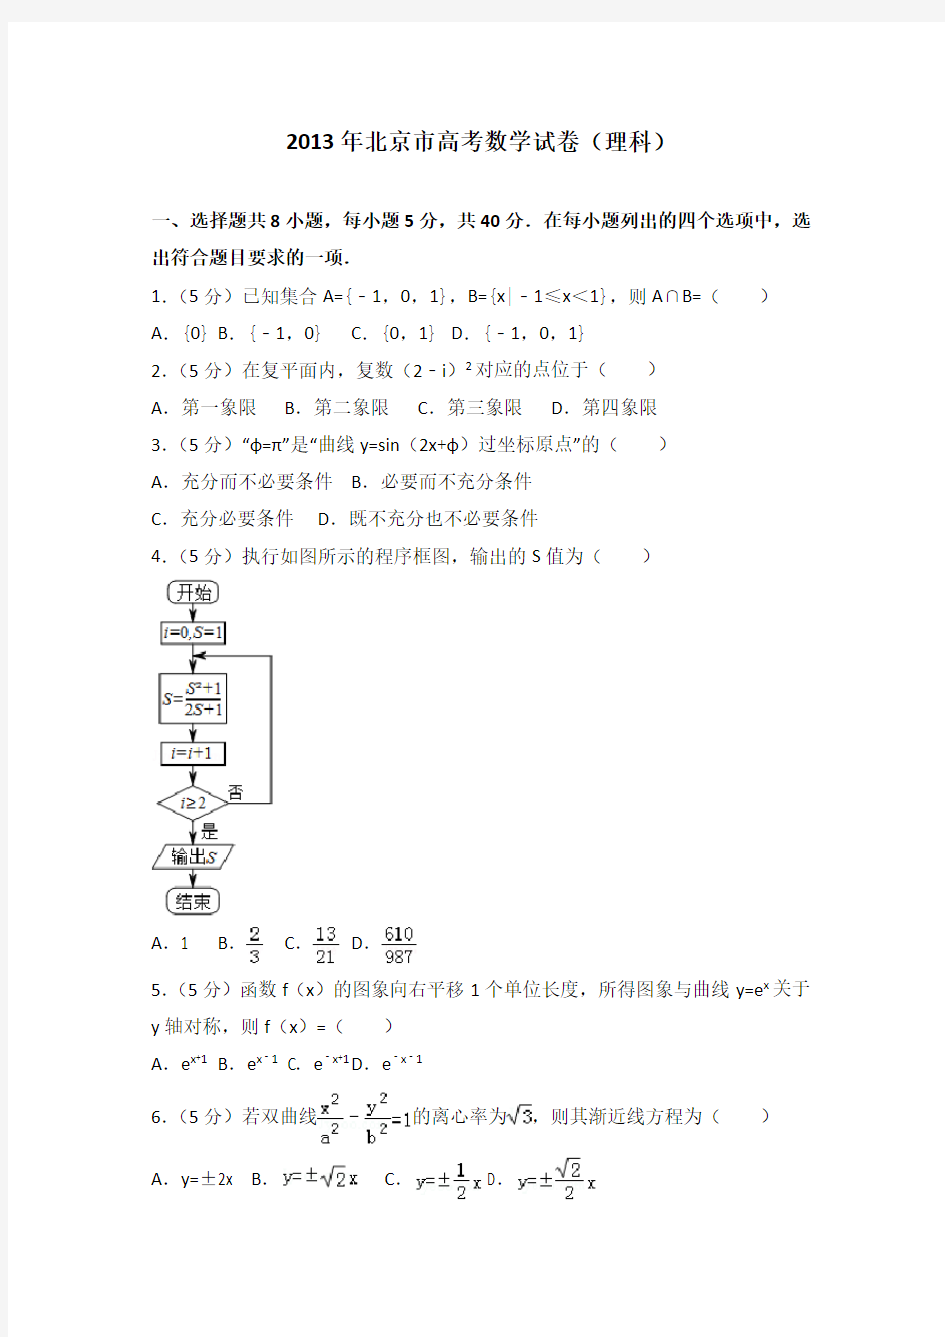 2013年北京市高考数学试卷(理科)附送答案